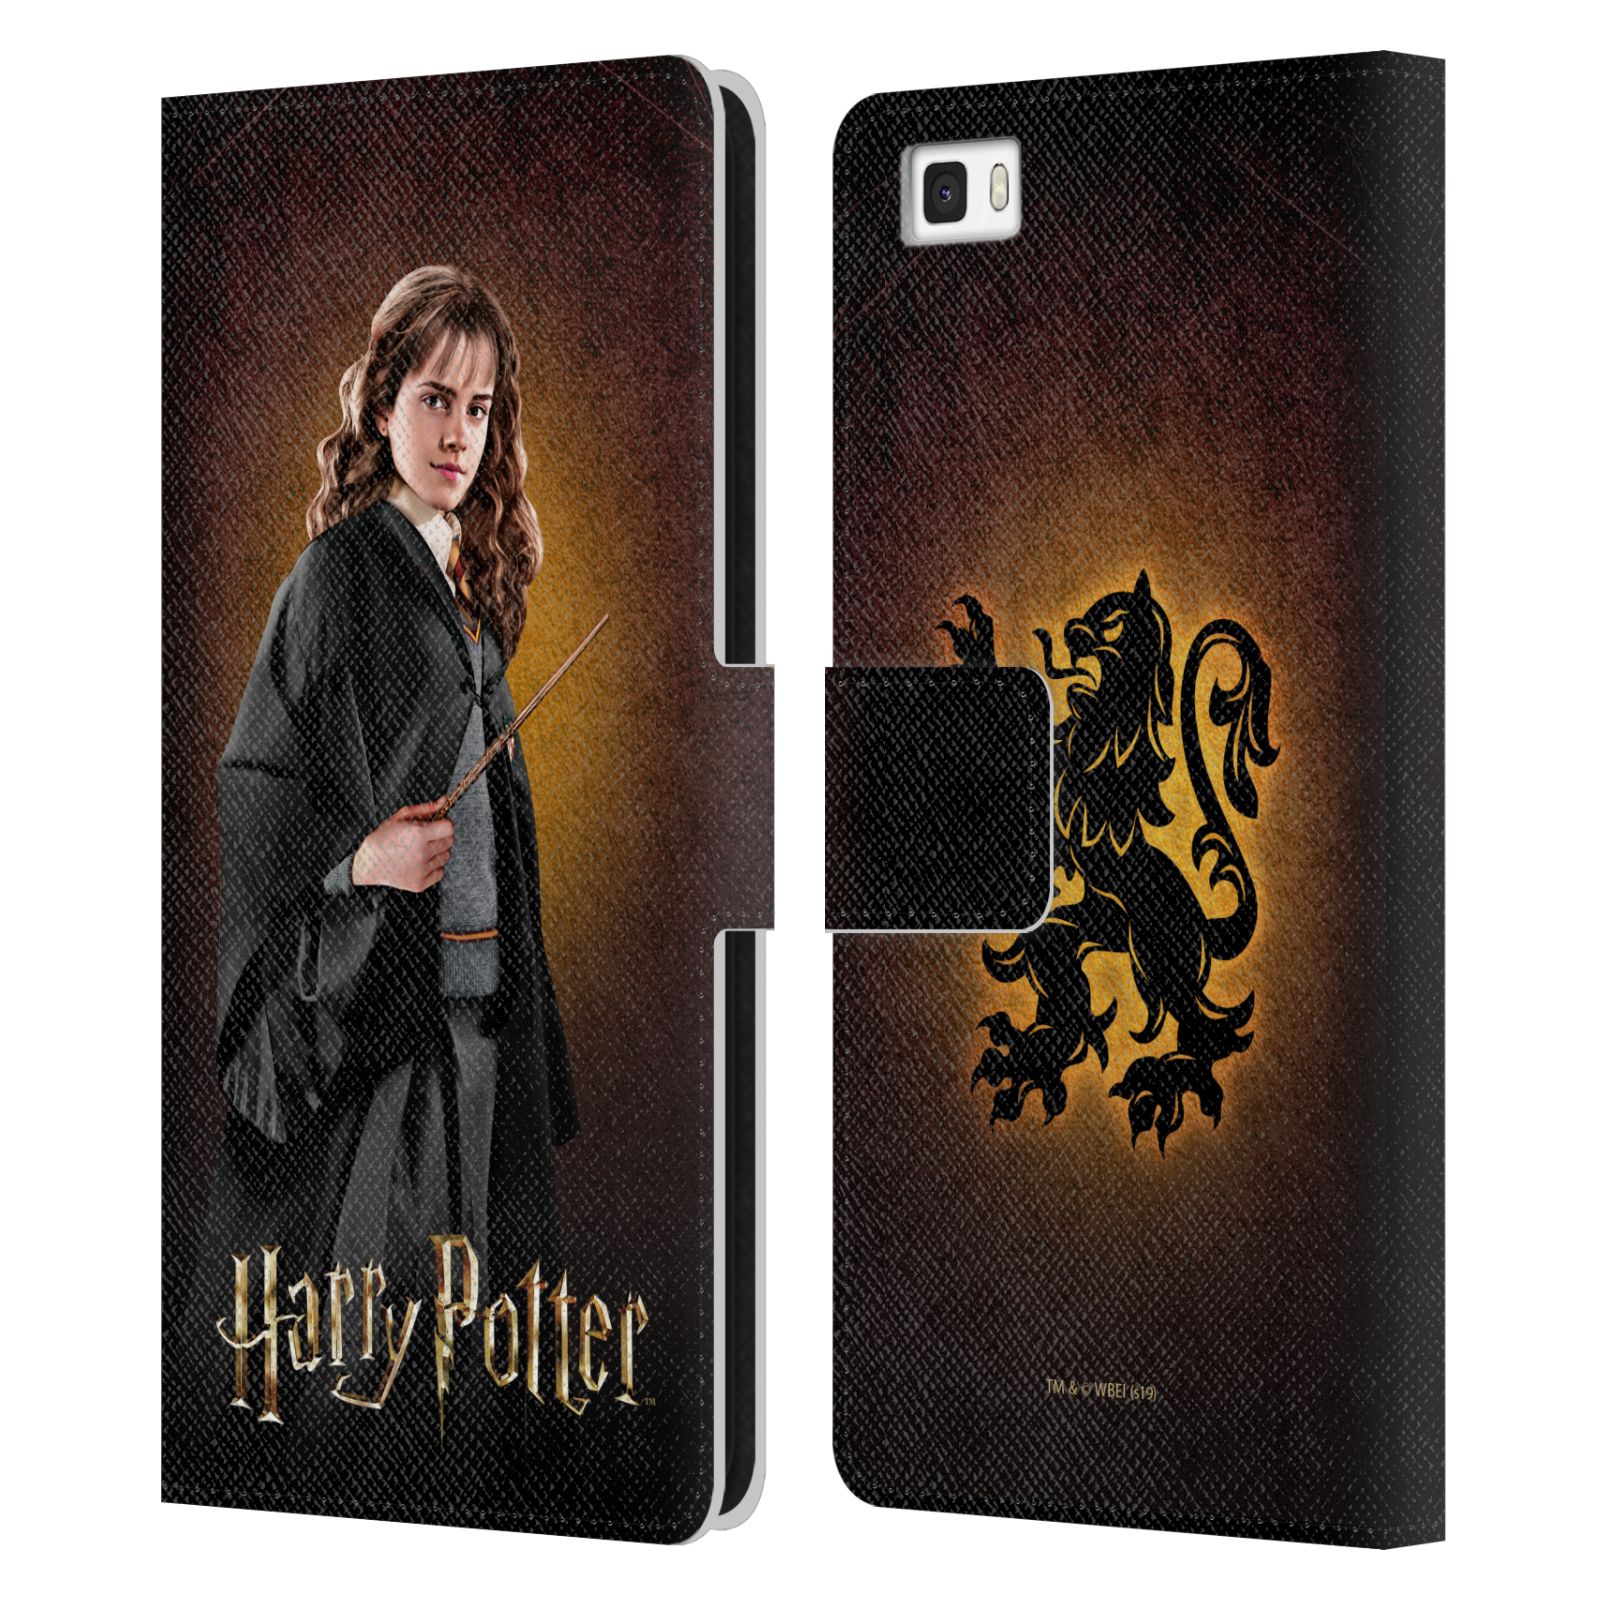 Pouzdro na mobil Huawei P8 LITE - HEAD CASE - Harry Potter - Hermiona Grangerová